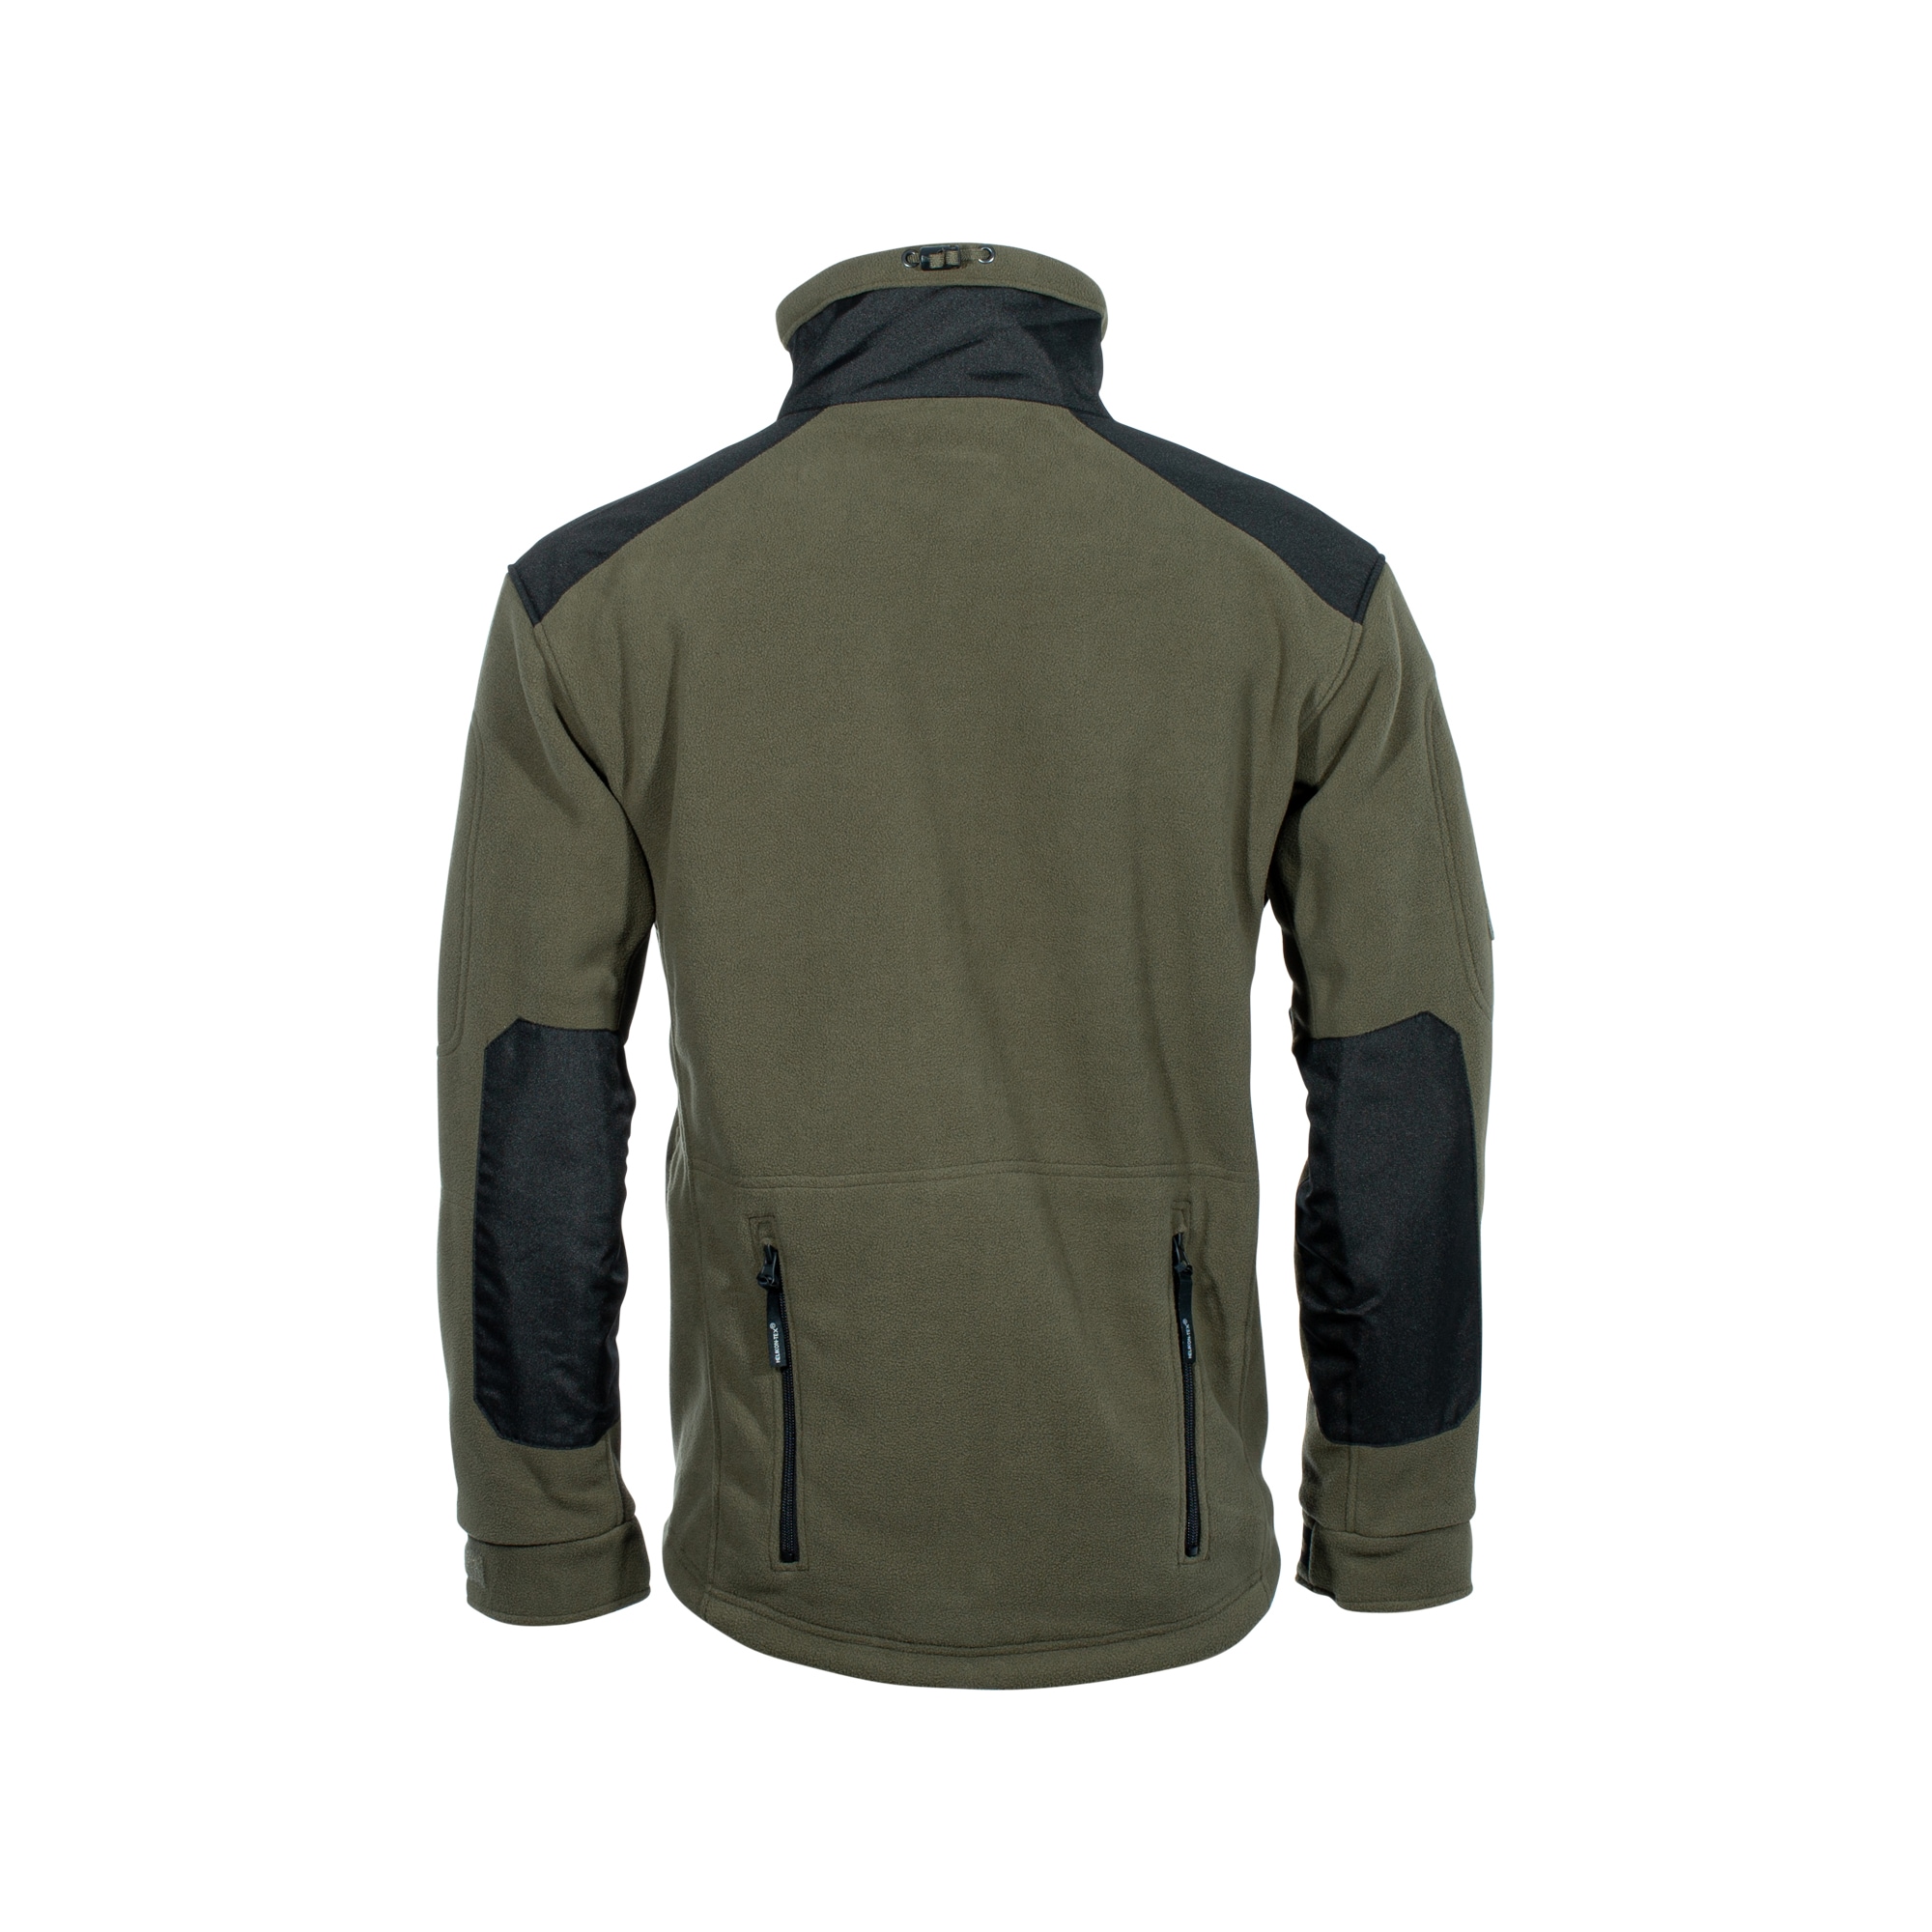 Helikon-Tex Liberty Jacket Double Fleece – On Duty Equipment